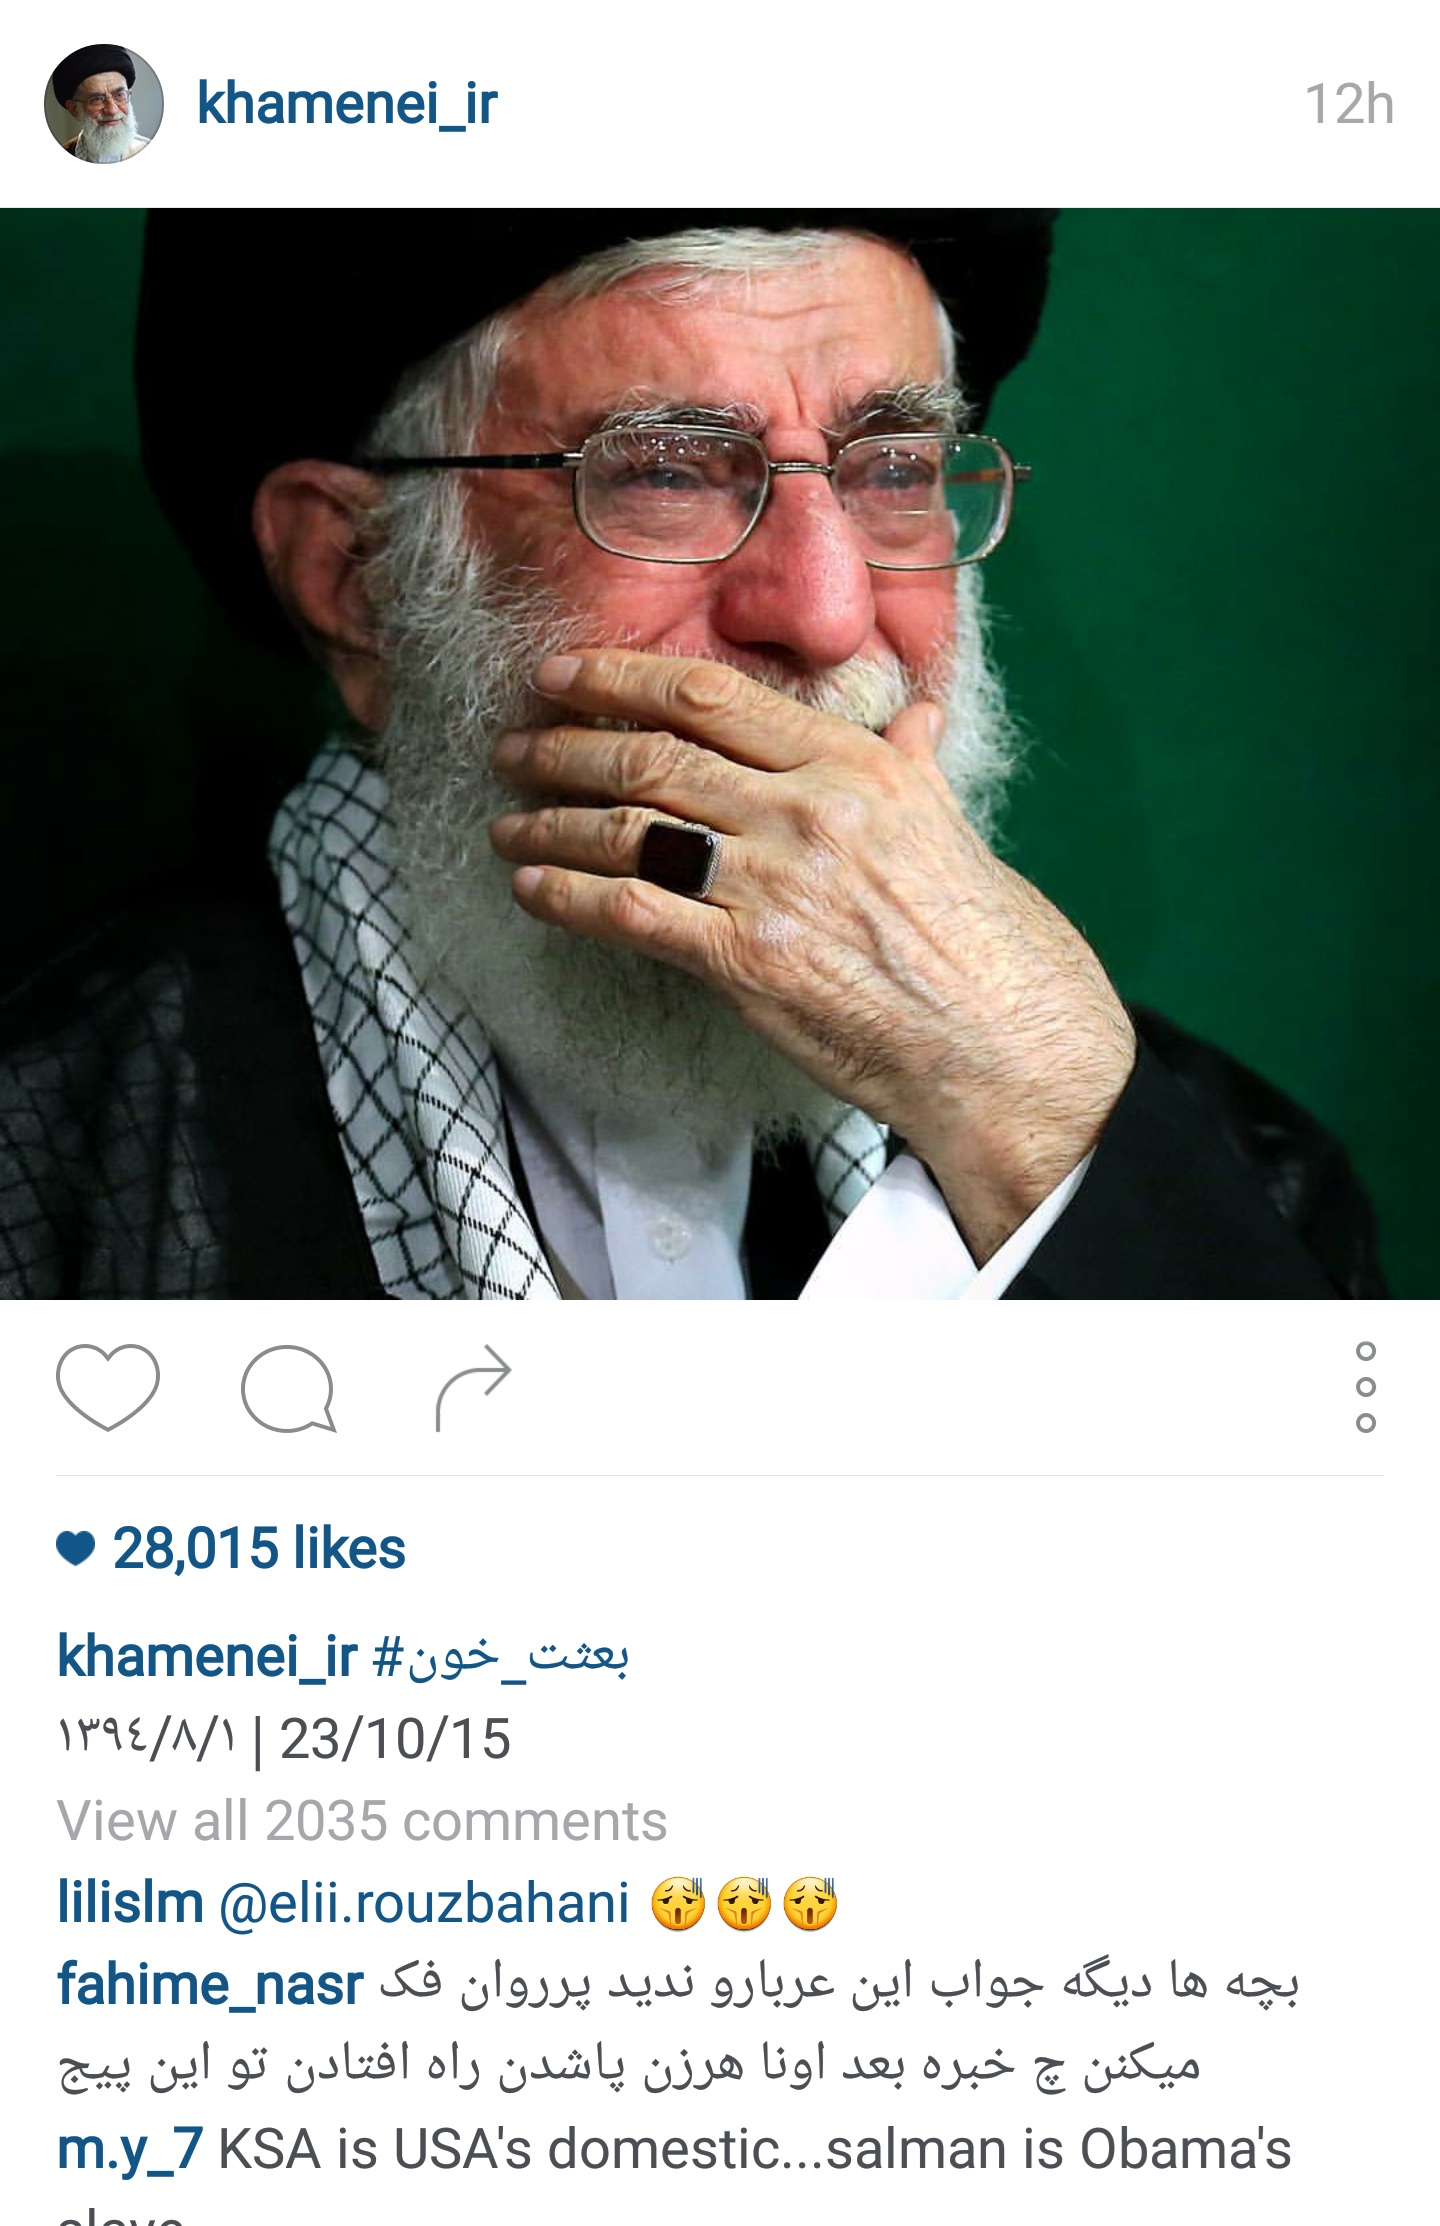 حال و هوای عزاداری حسینی در اینستاگرام سیاستمدارها